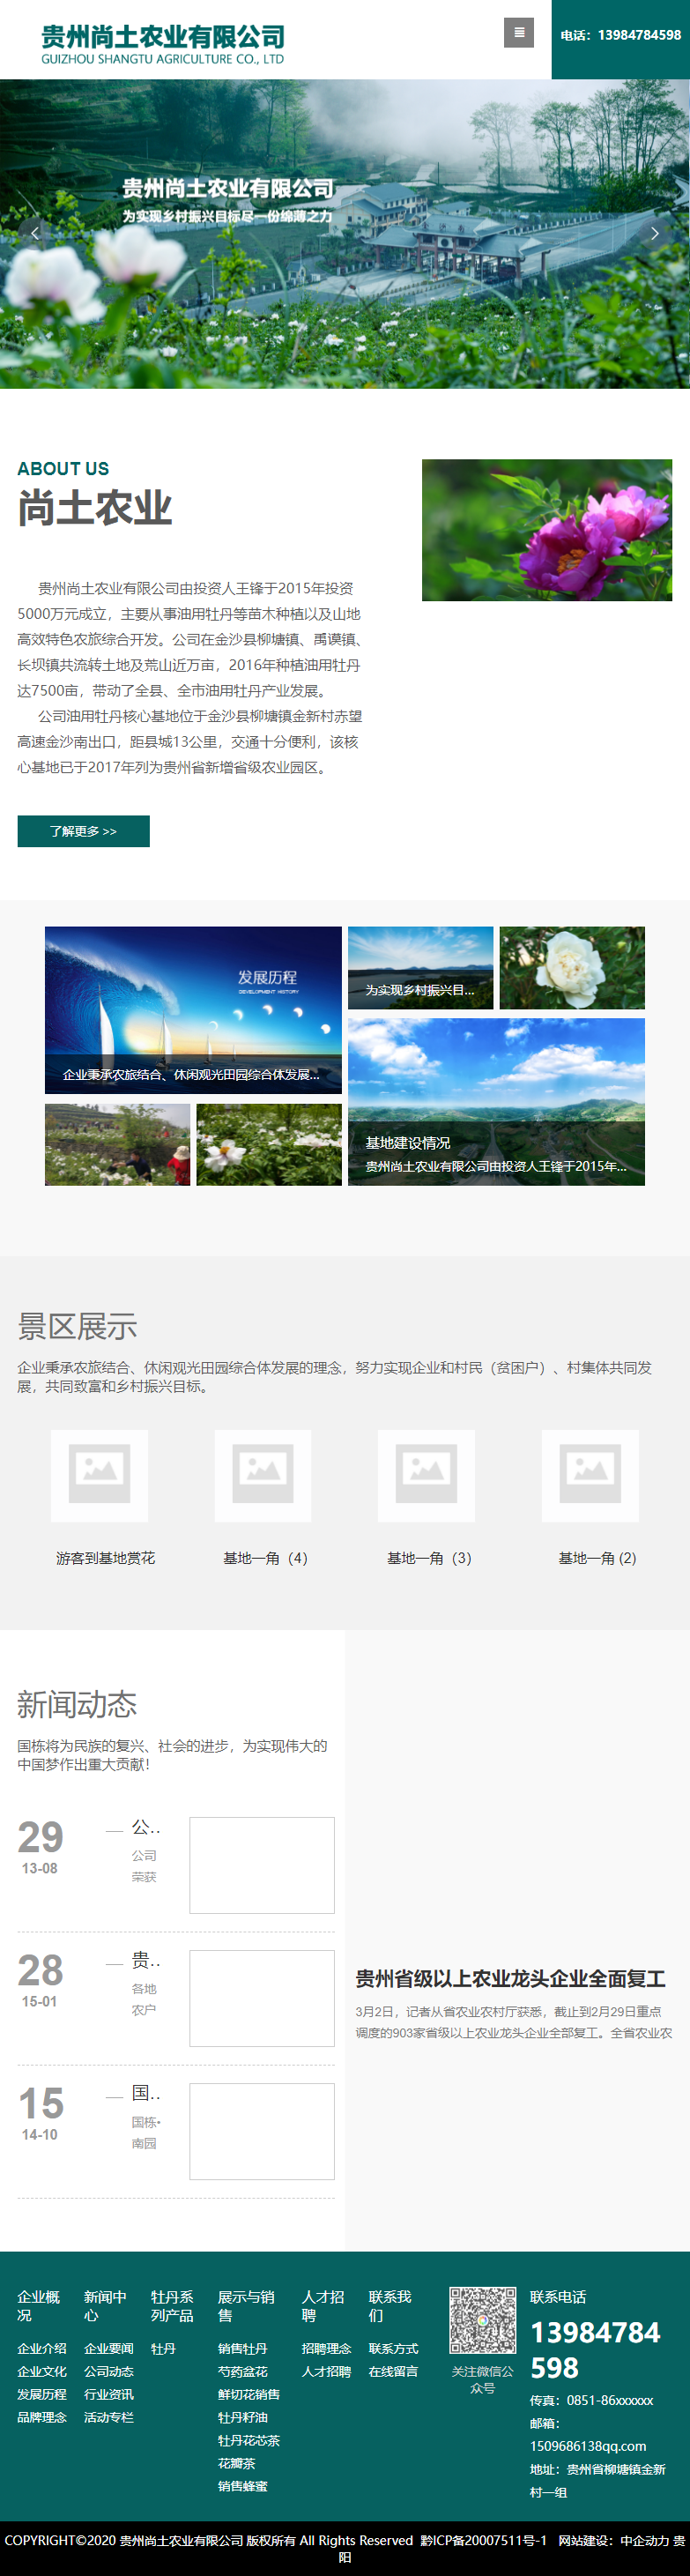 贵州尚土农业有限公司网站案例